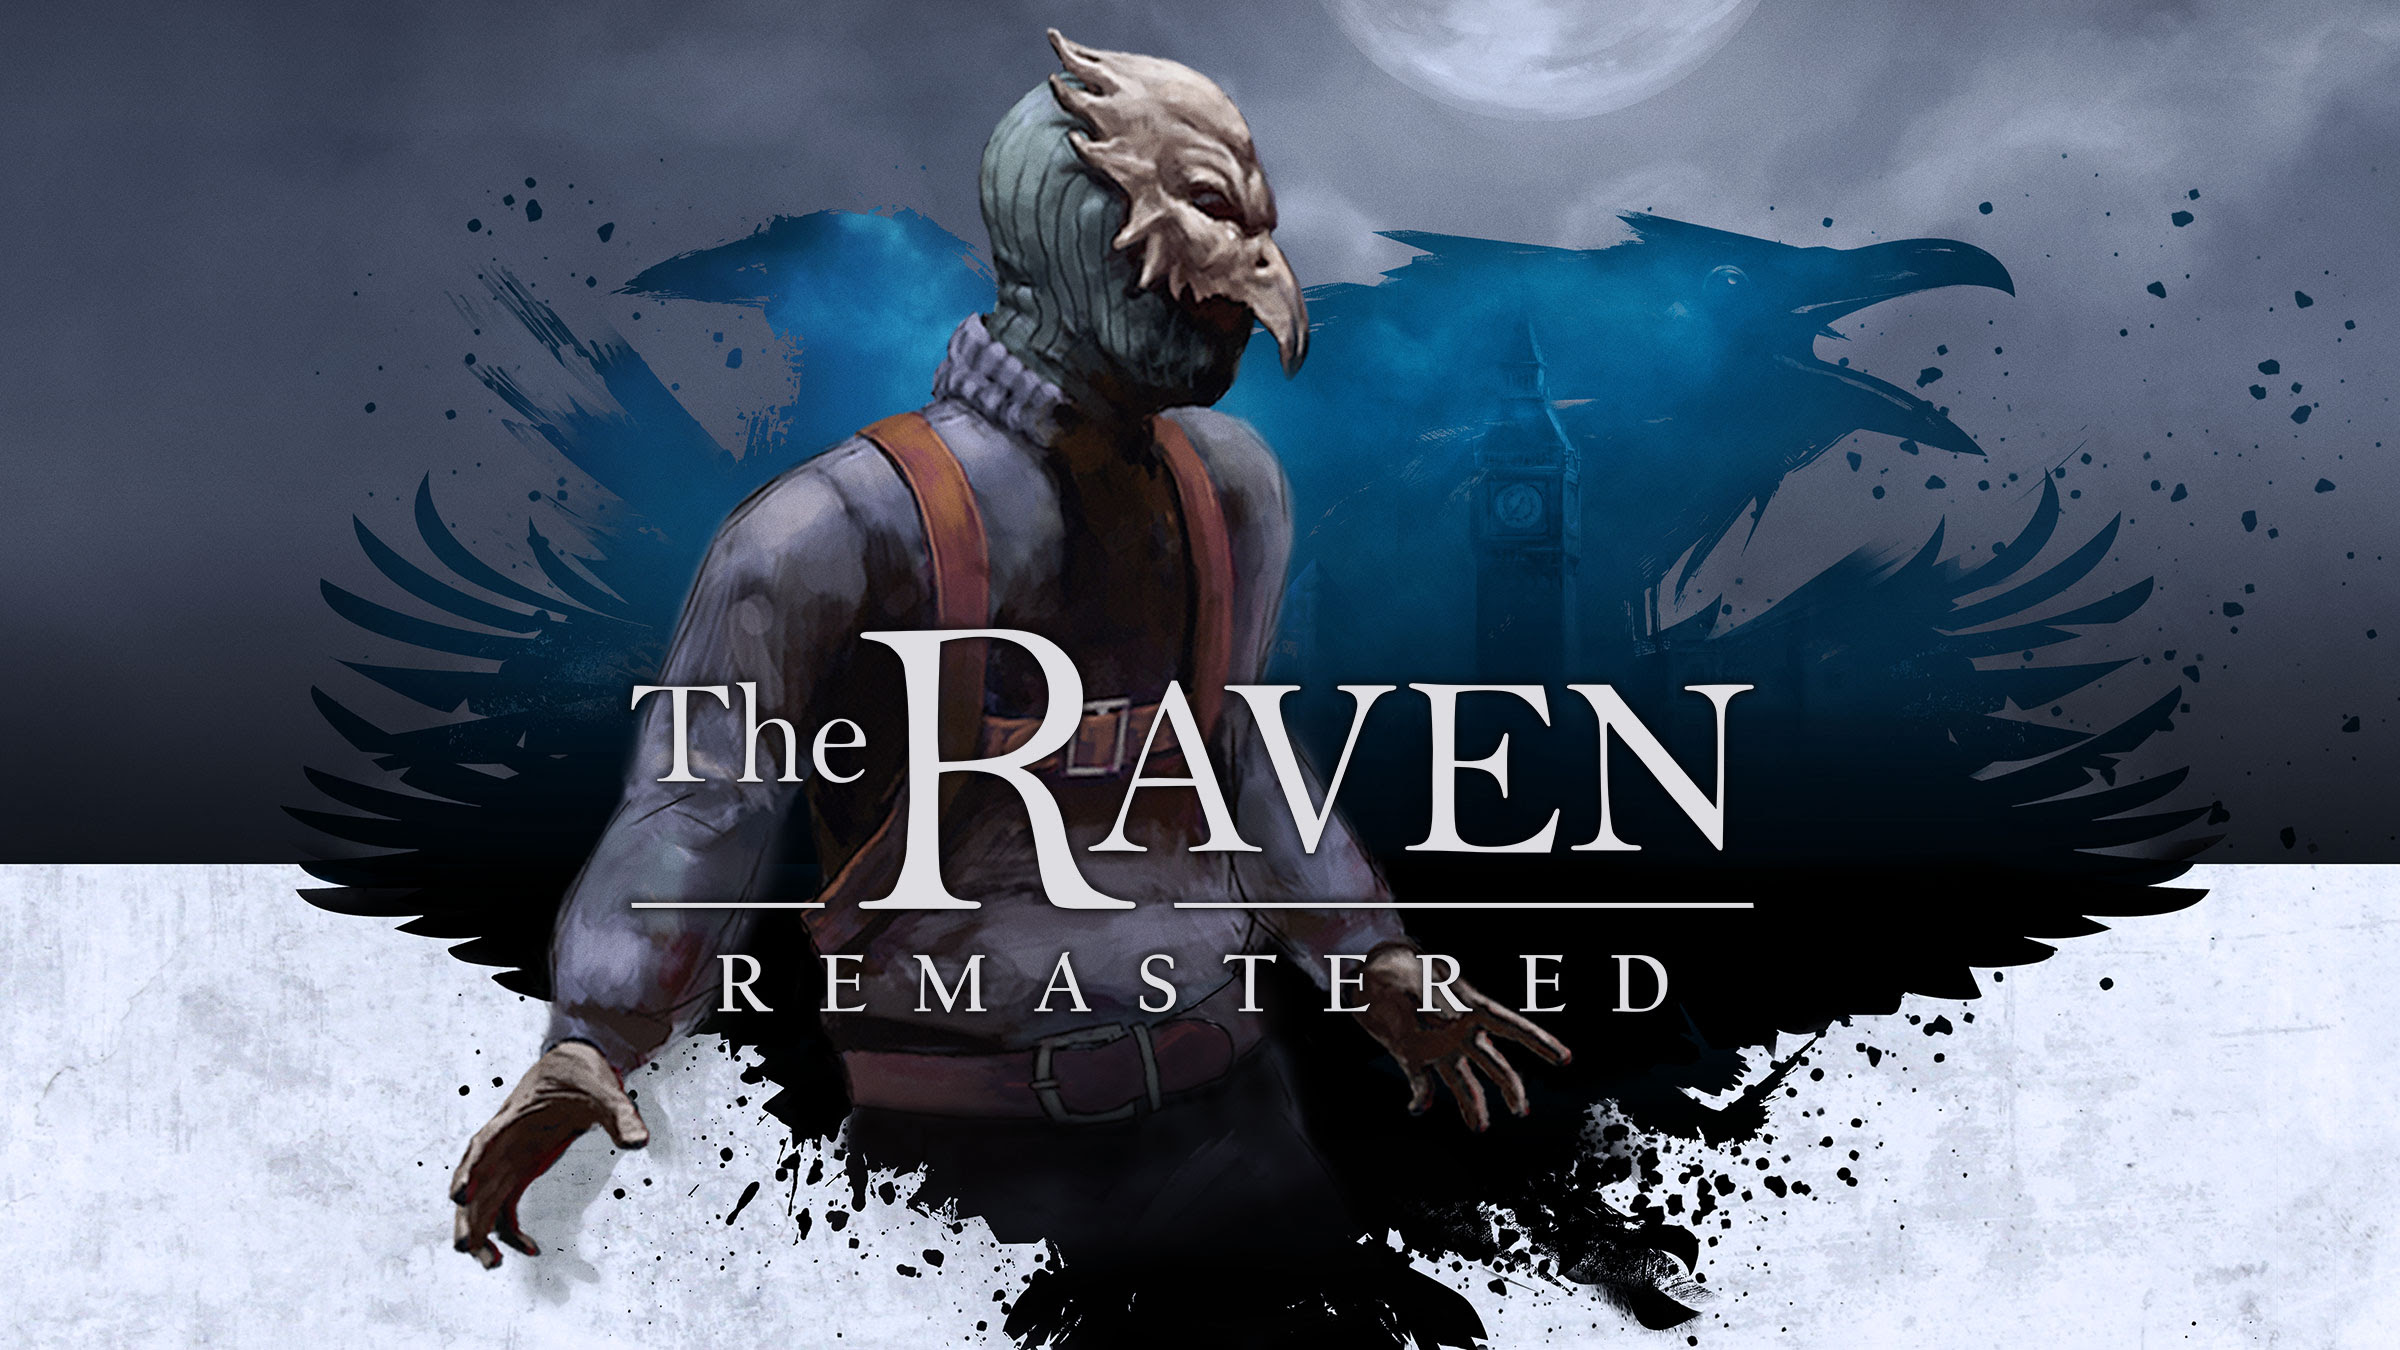 The Raven Remastered estrena nuevo tráiler por su lanzamiento